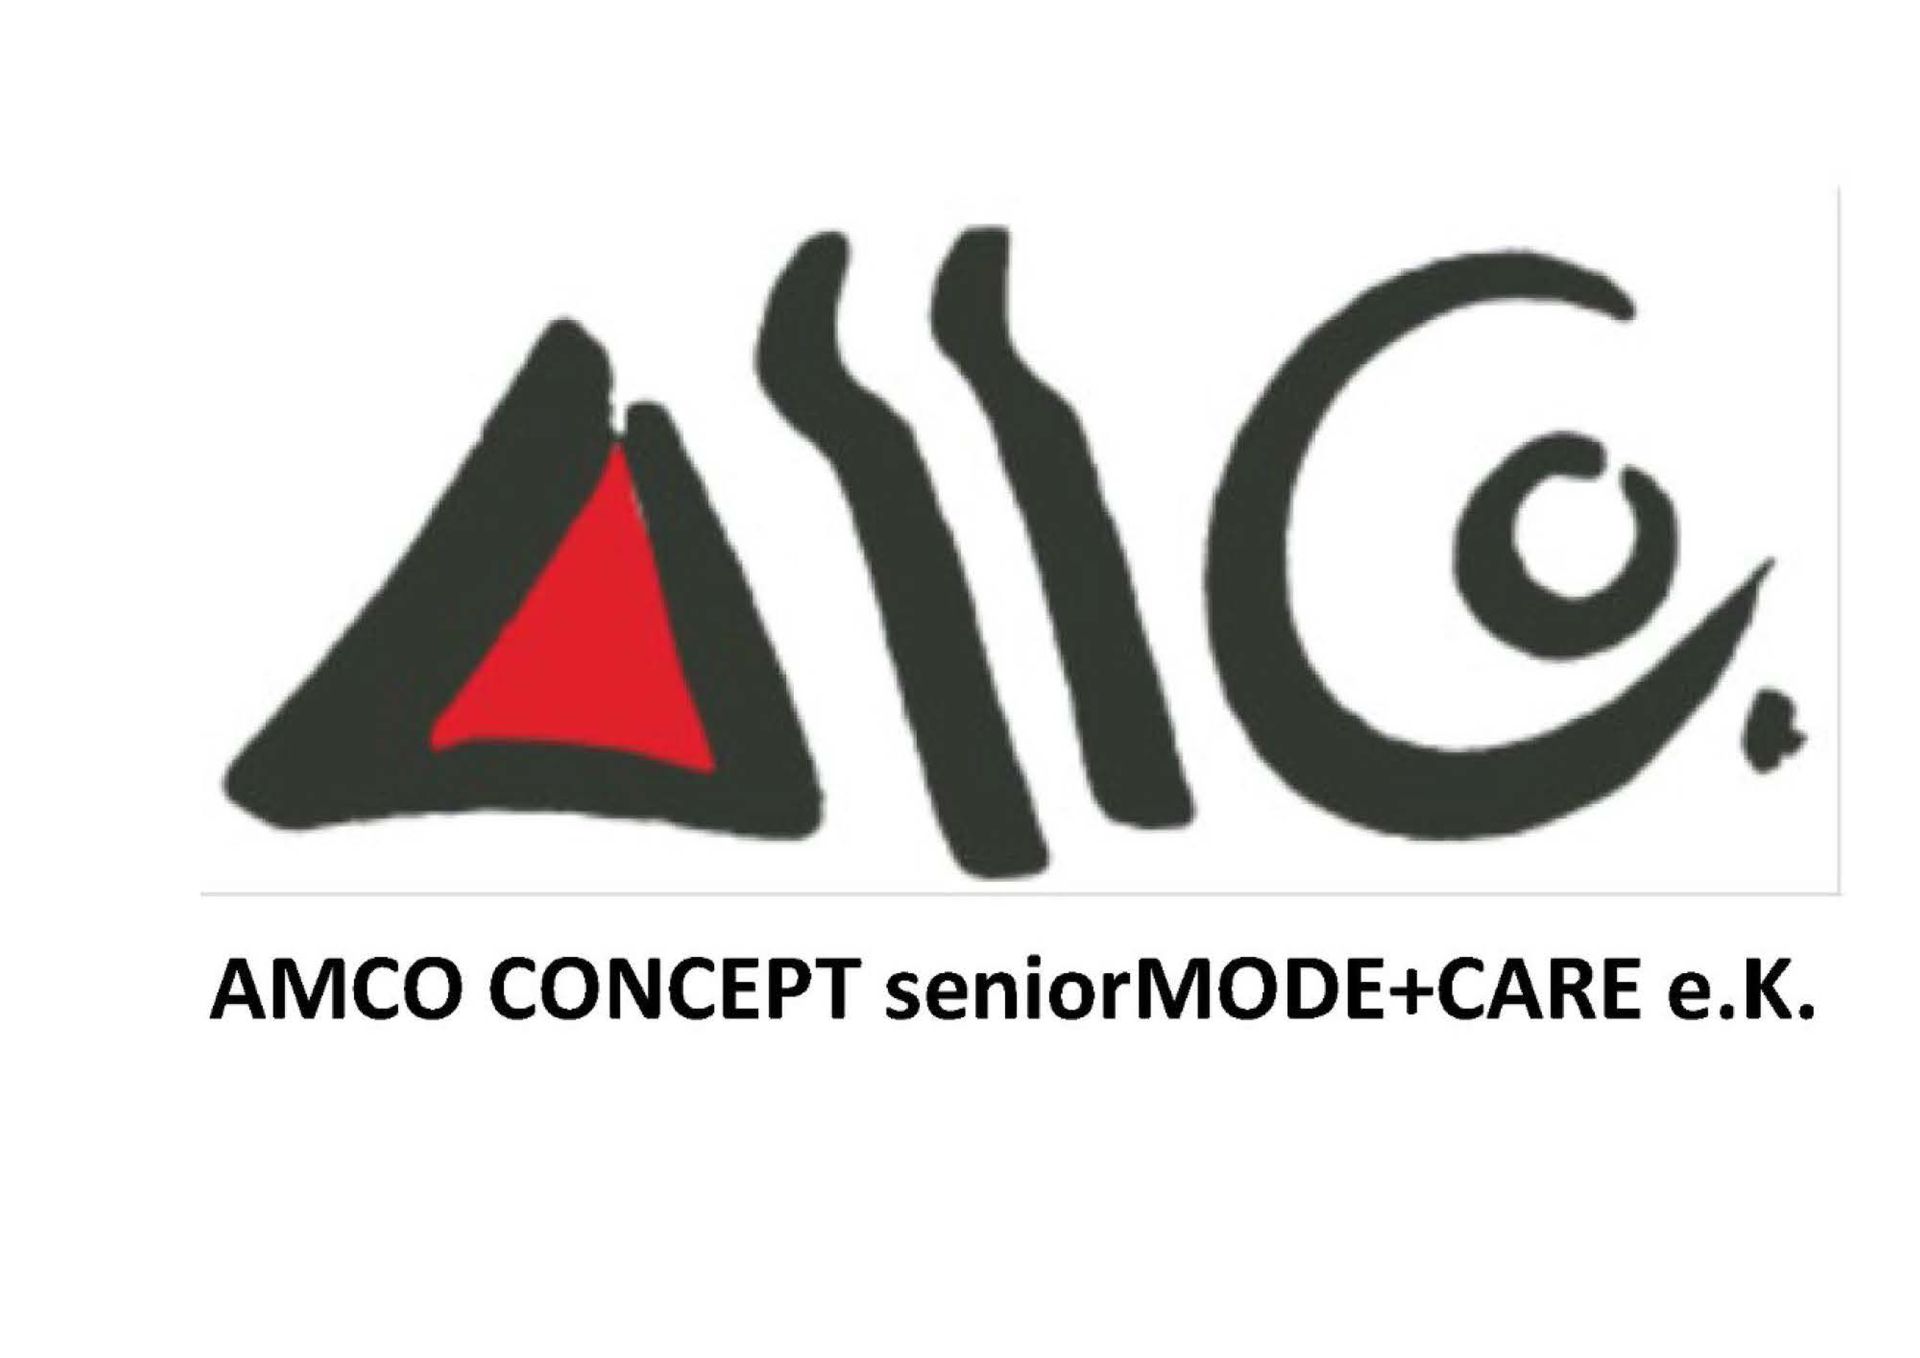 AMCO CONCEPT seniorMODE+CARE e.K.